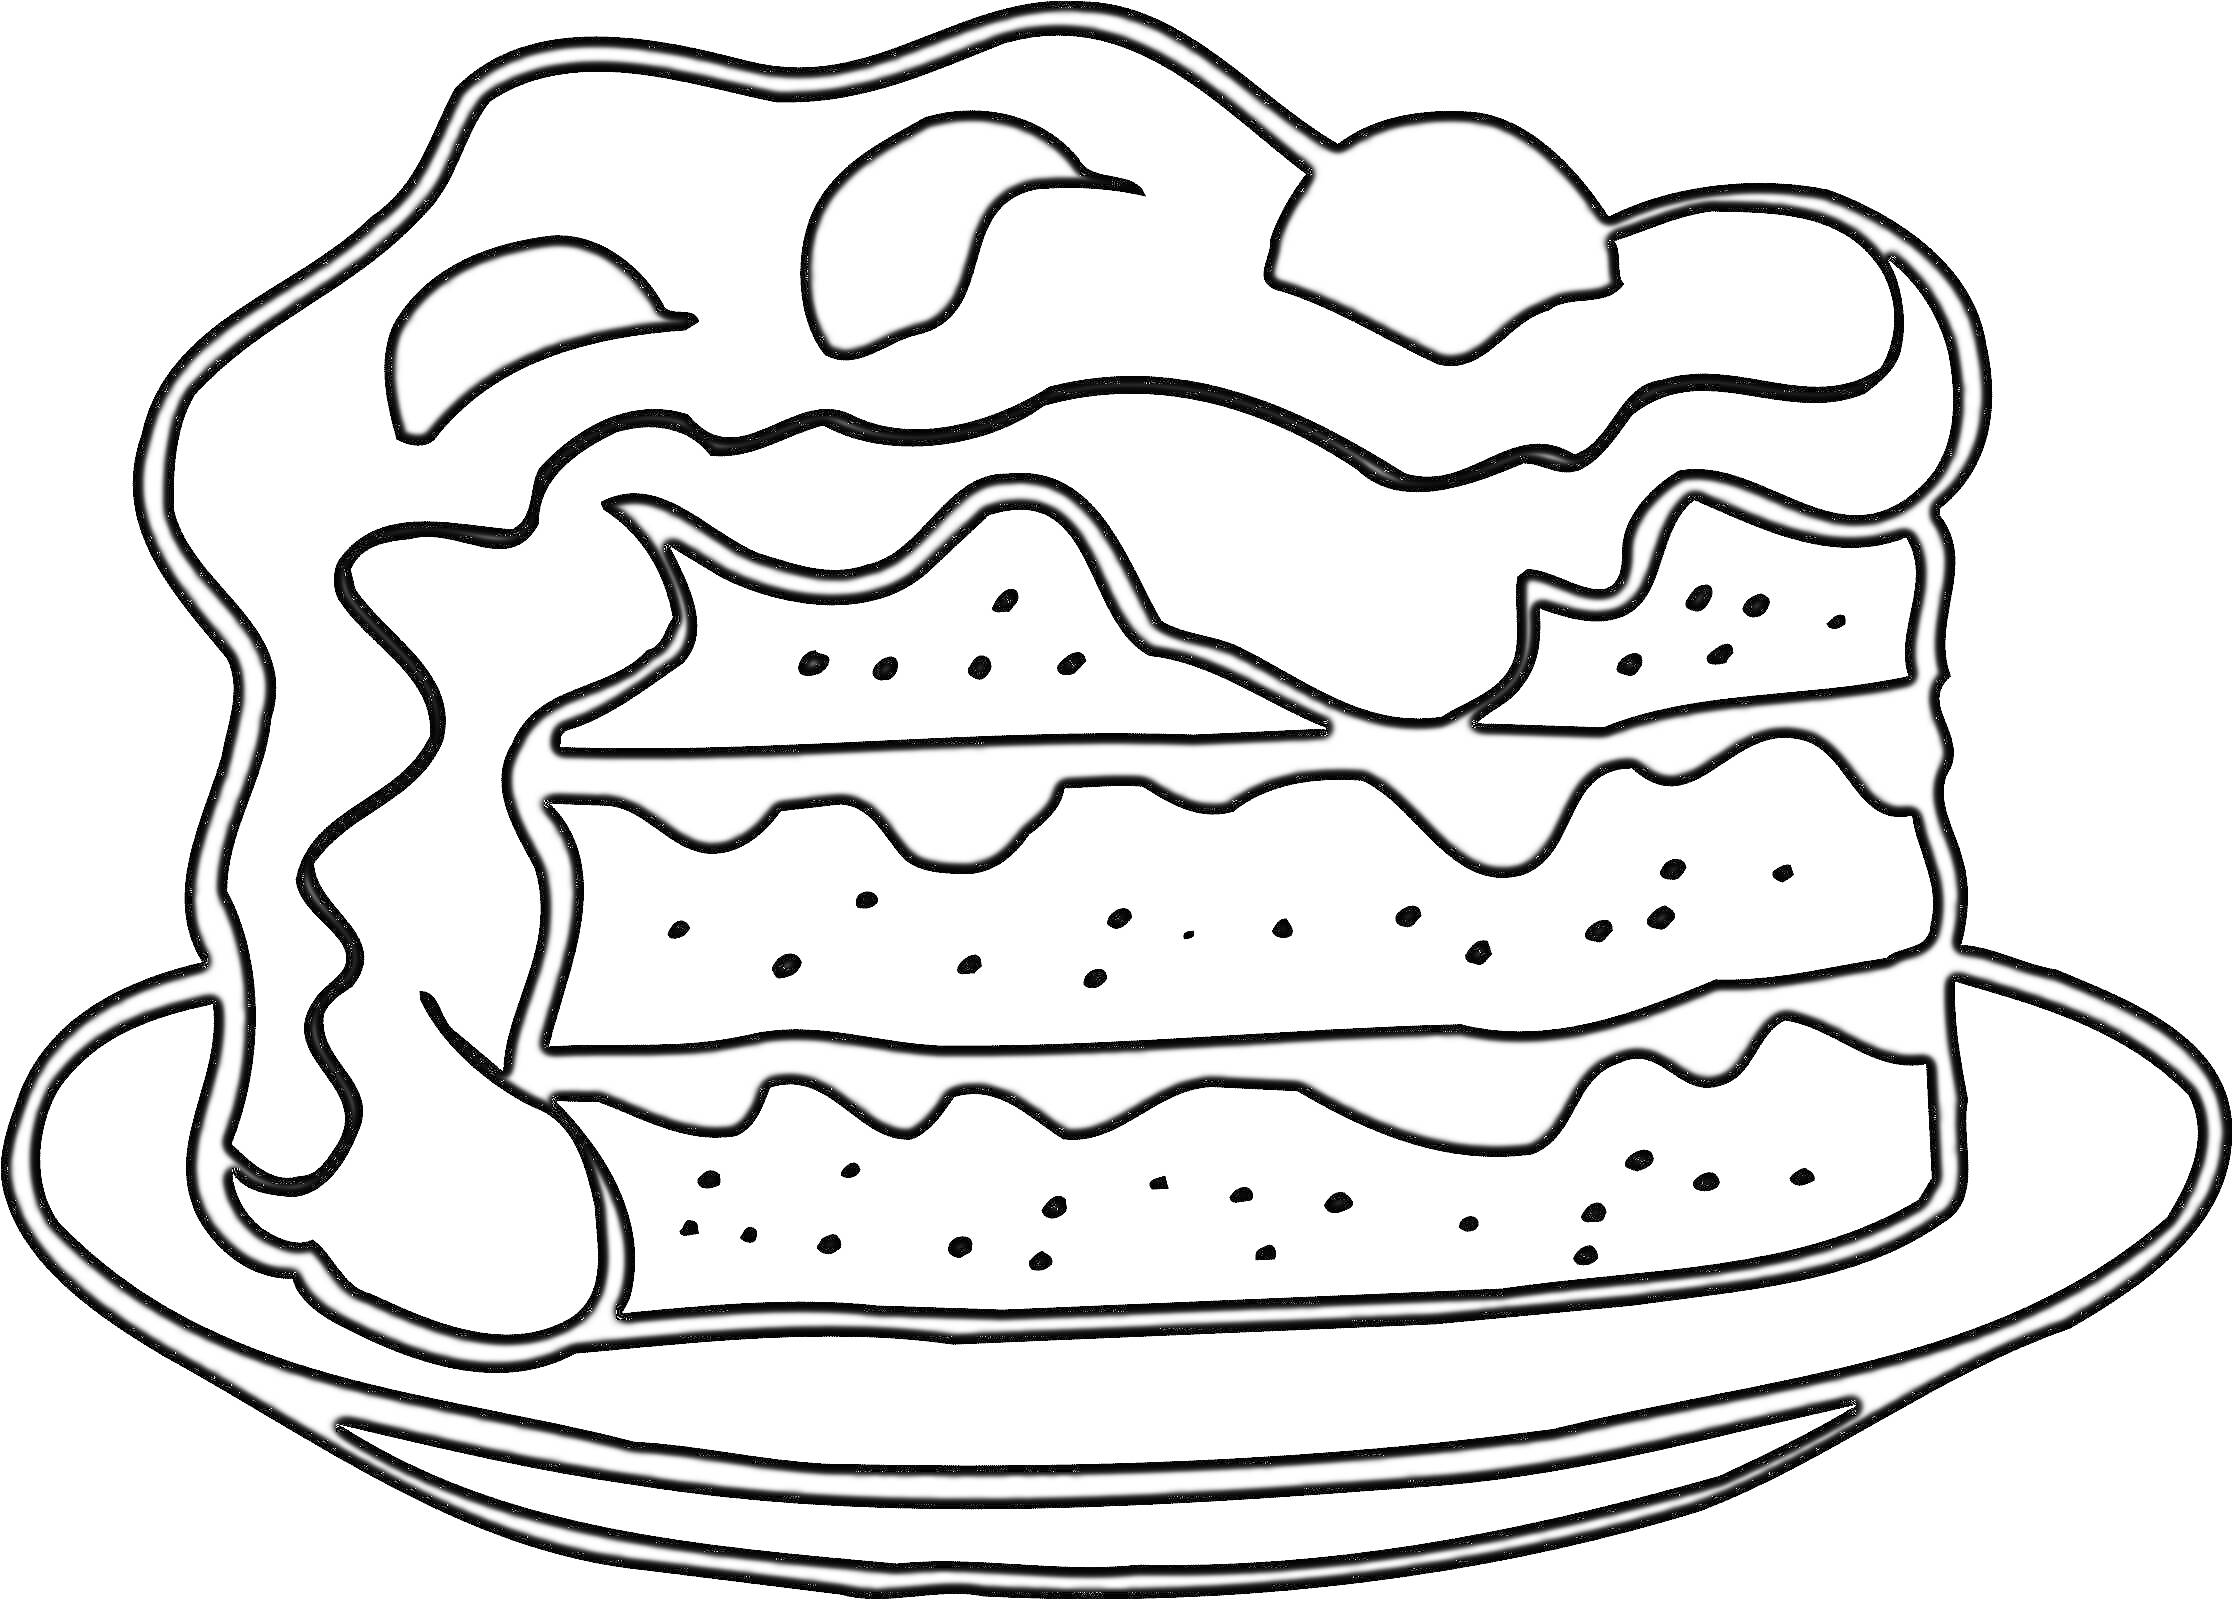 Раскраска Торт с кремом и ягодами на тарелке